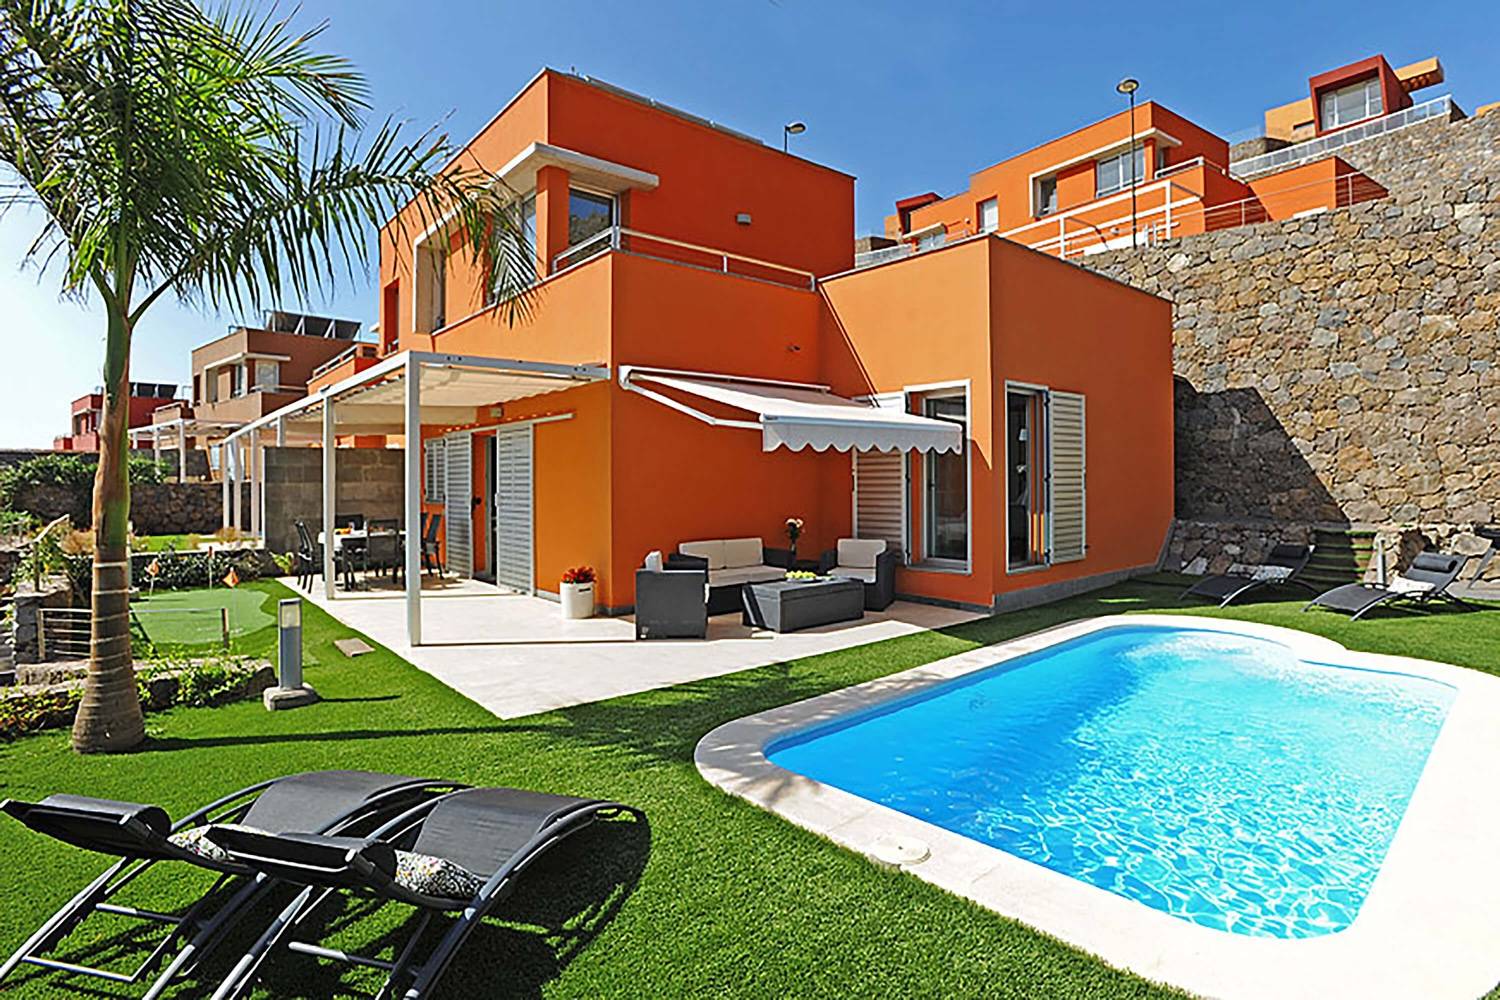 Moderne, goed ingerichte villa met twee slaapkamers, een verwarmd privézwembad, een barbecue en uitzicht op de golfbaan